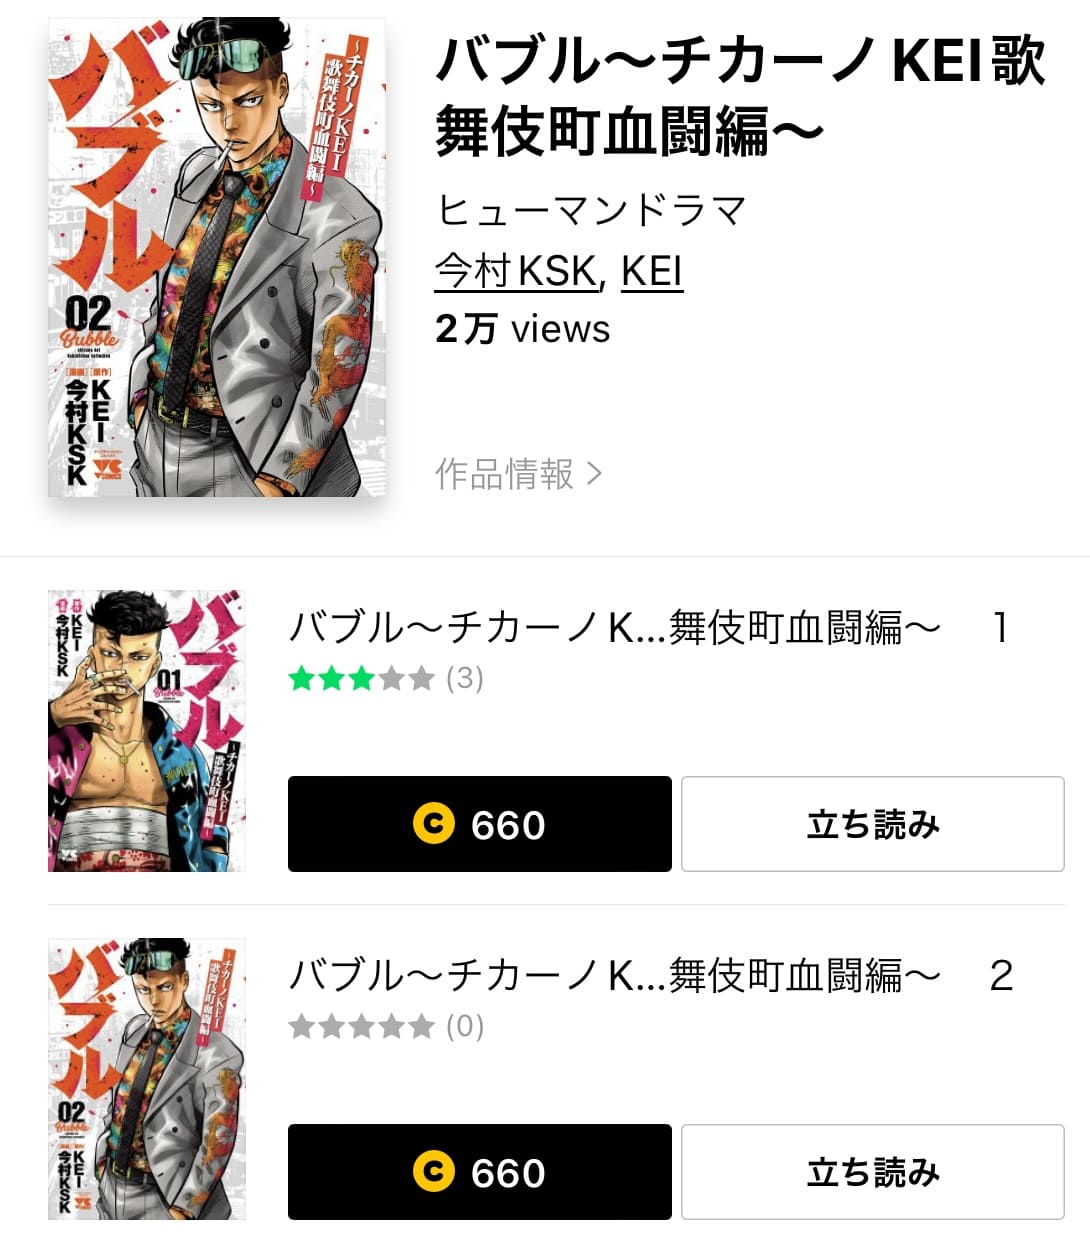 バブル～チカーノKEI歌舞伎町血闘編～の漫画を全巻無料で読む方法を調査！無料で読めるアプリやサイト一覧も